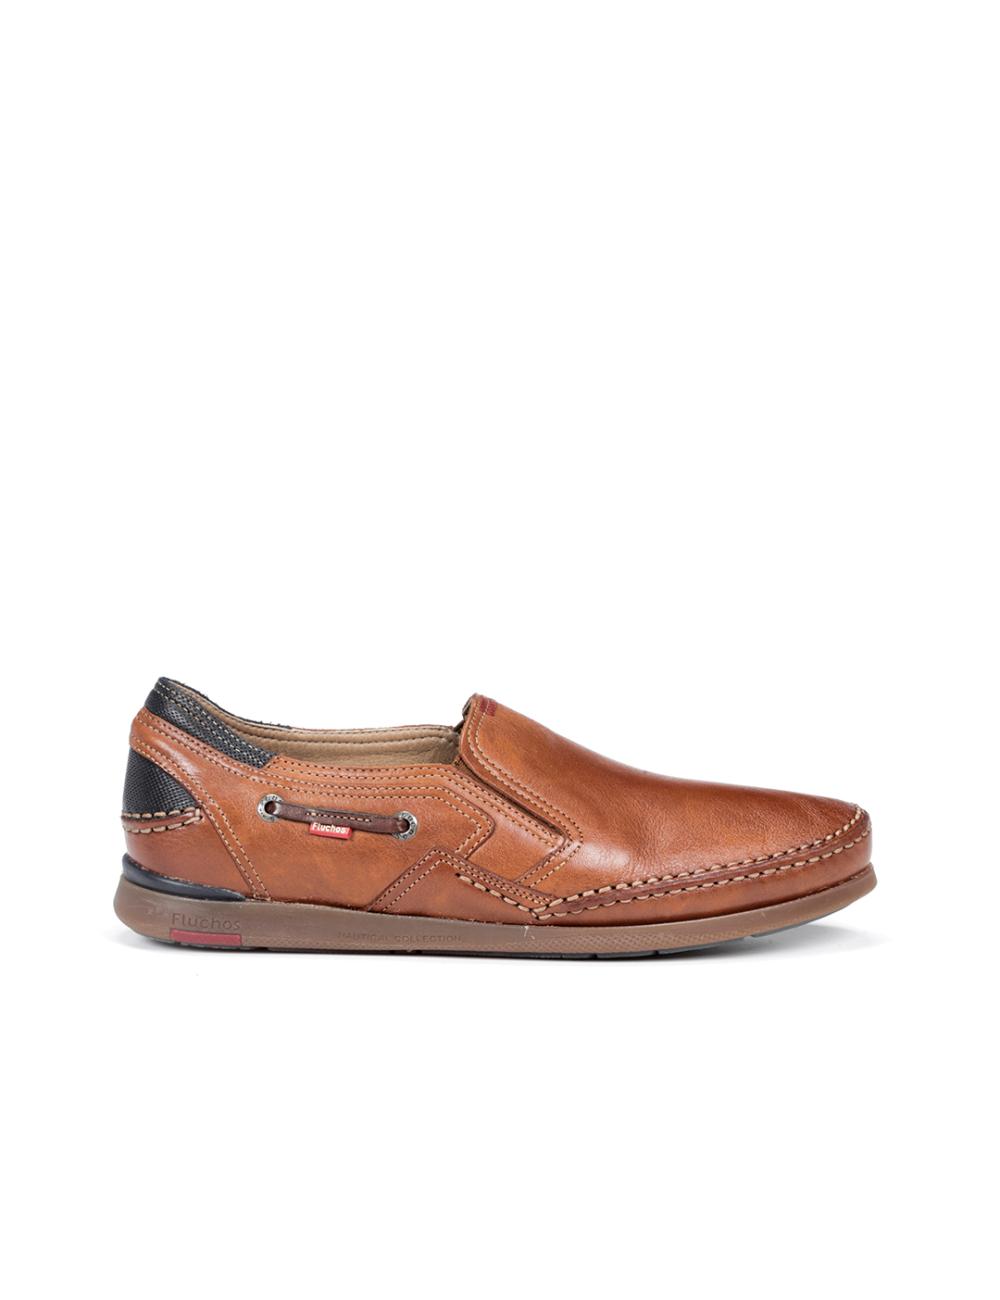 Fluchos - Zapato casual de hombre PD-9883